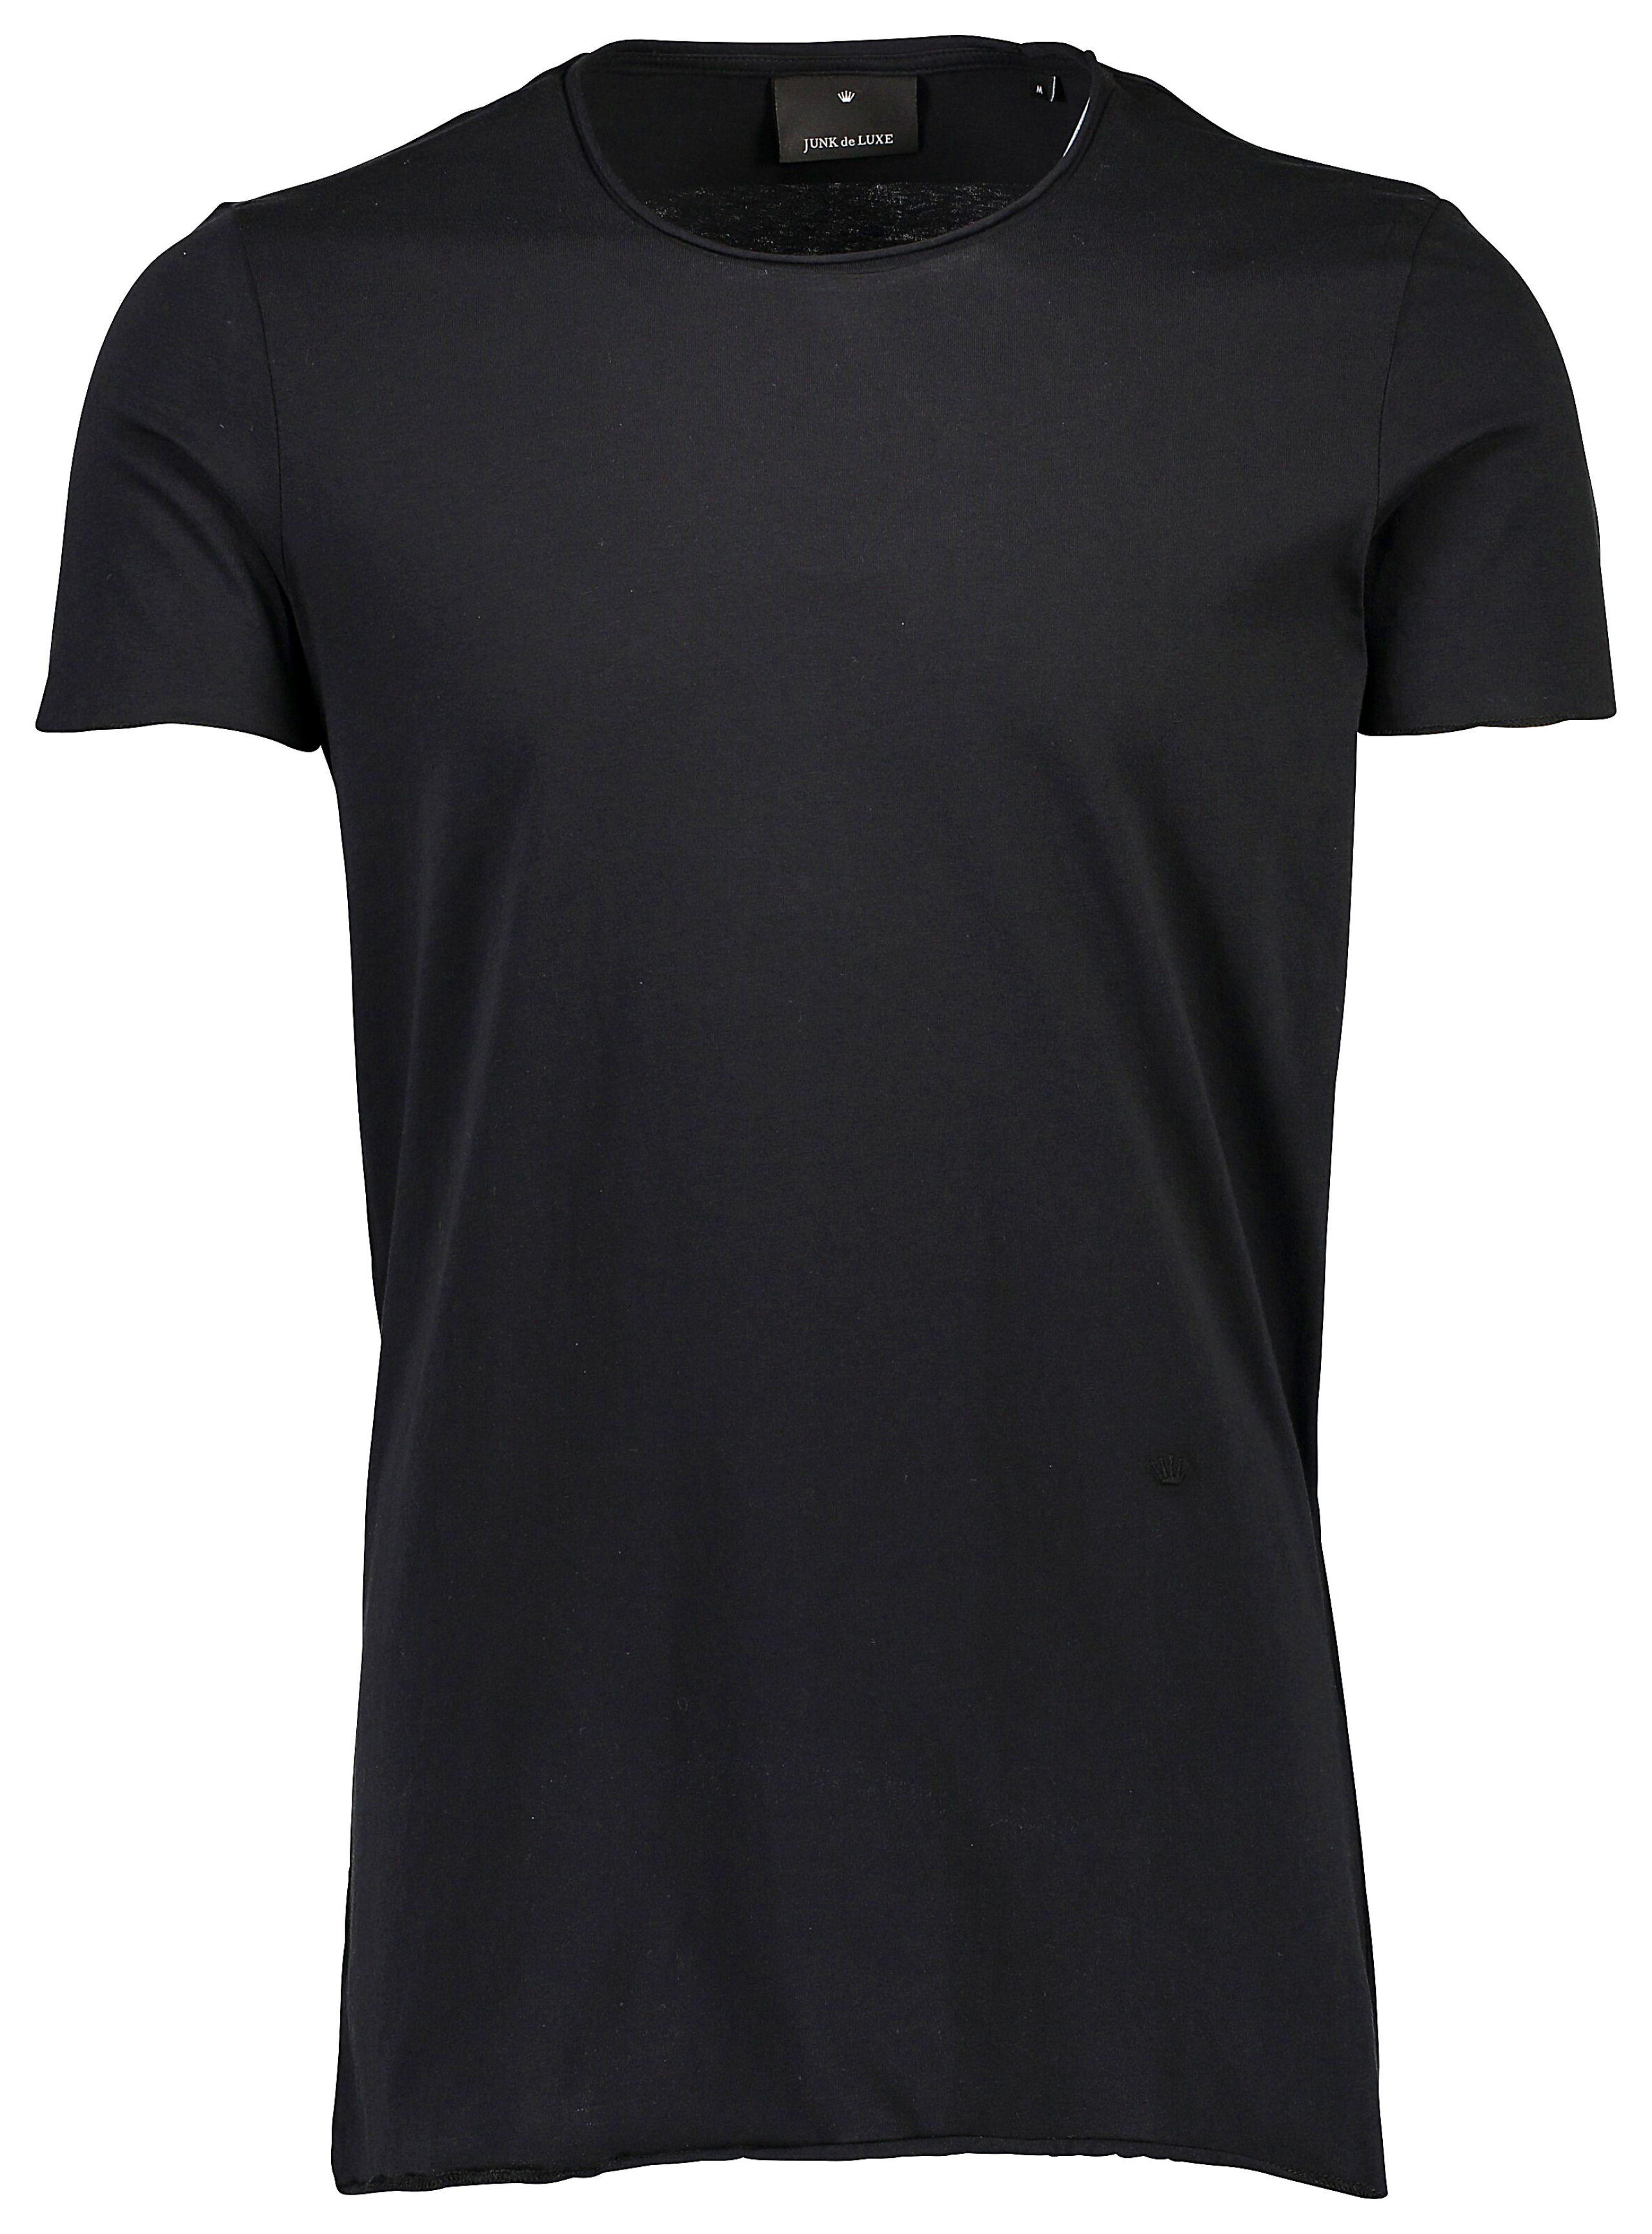 Junk de Luxe T-shirt svart / black